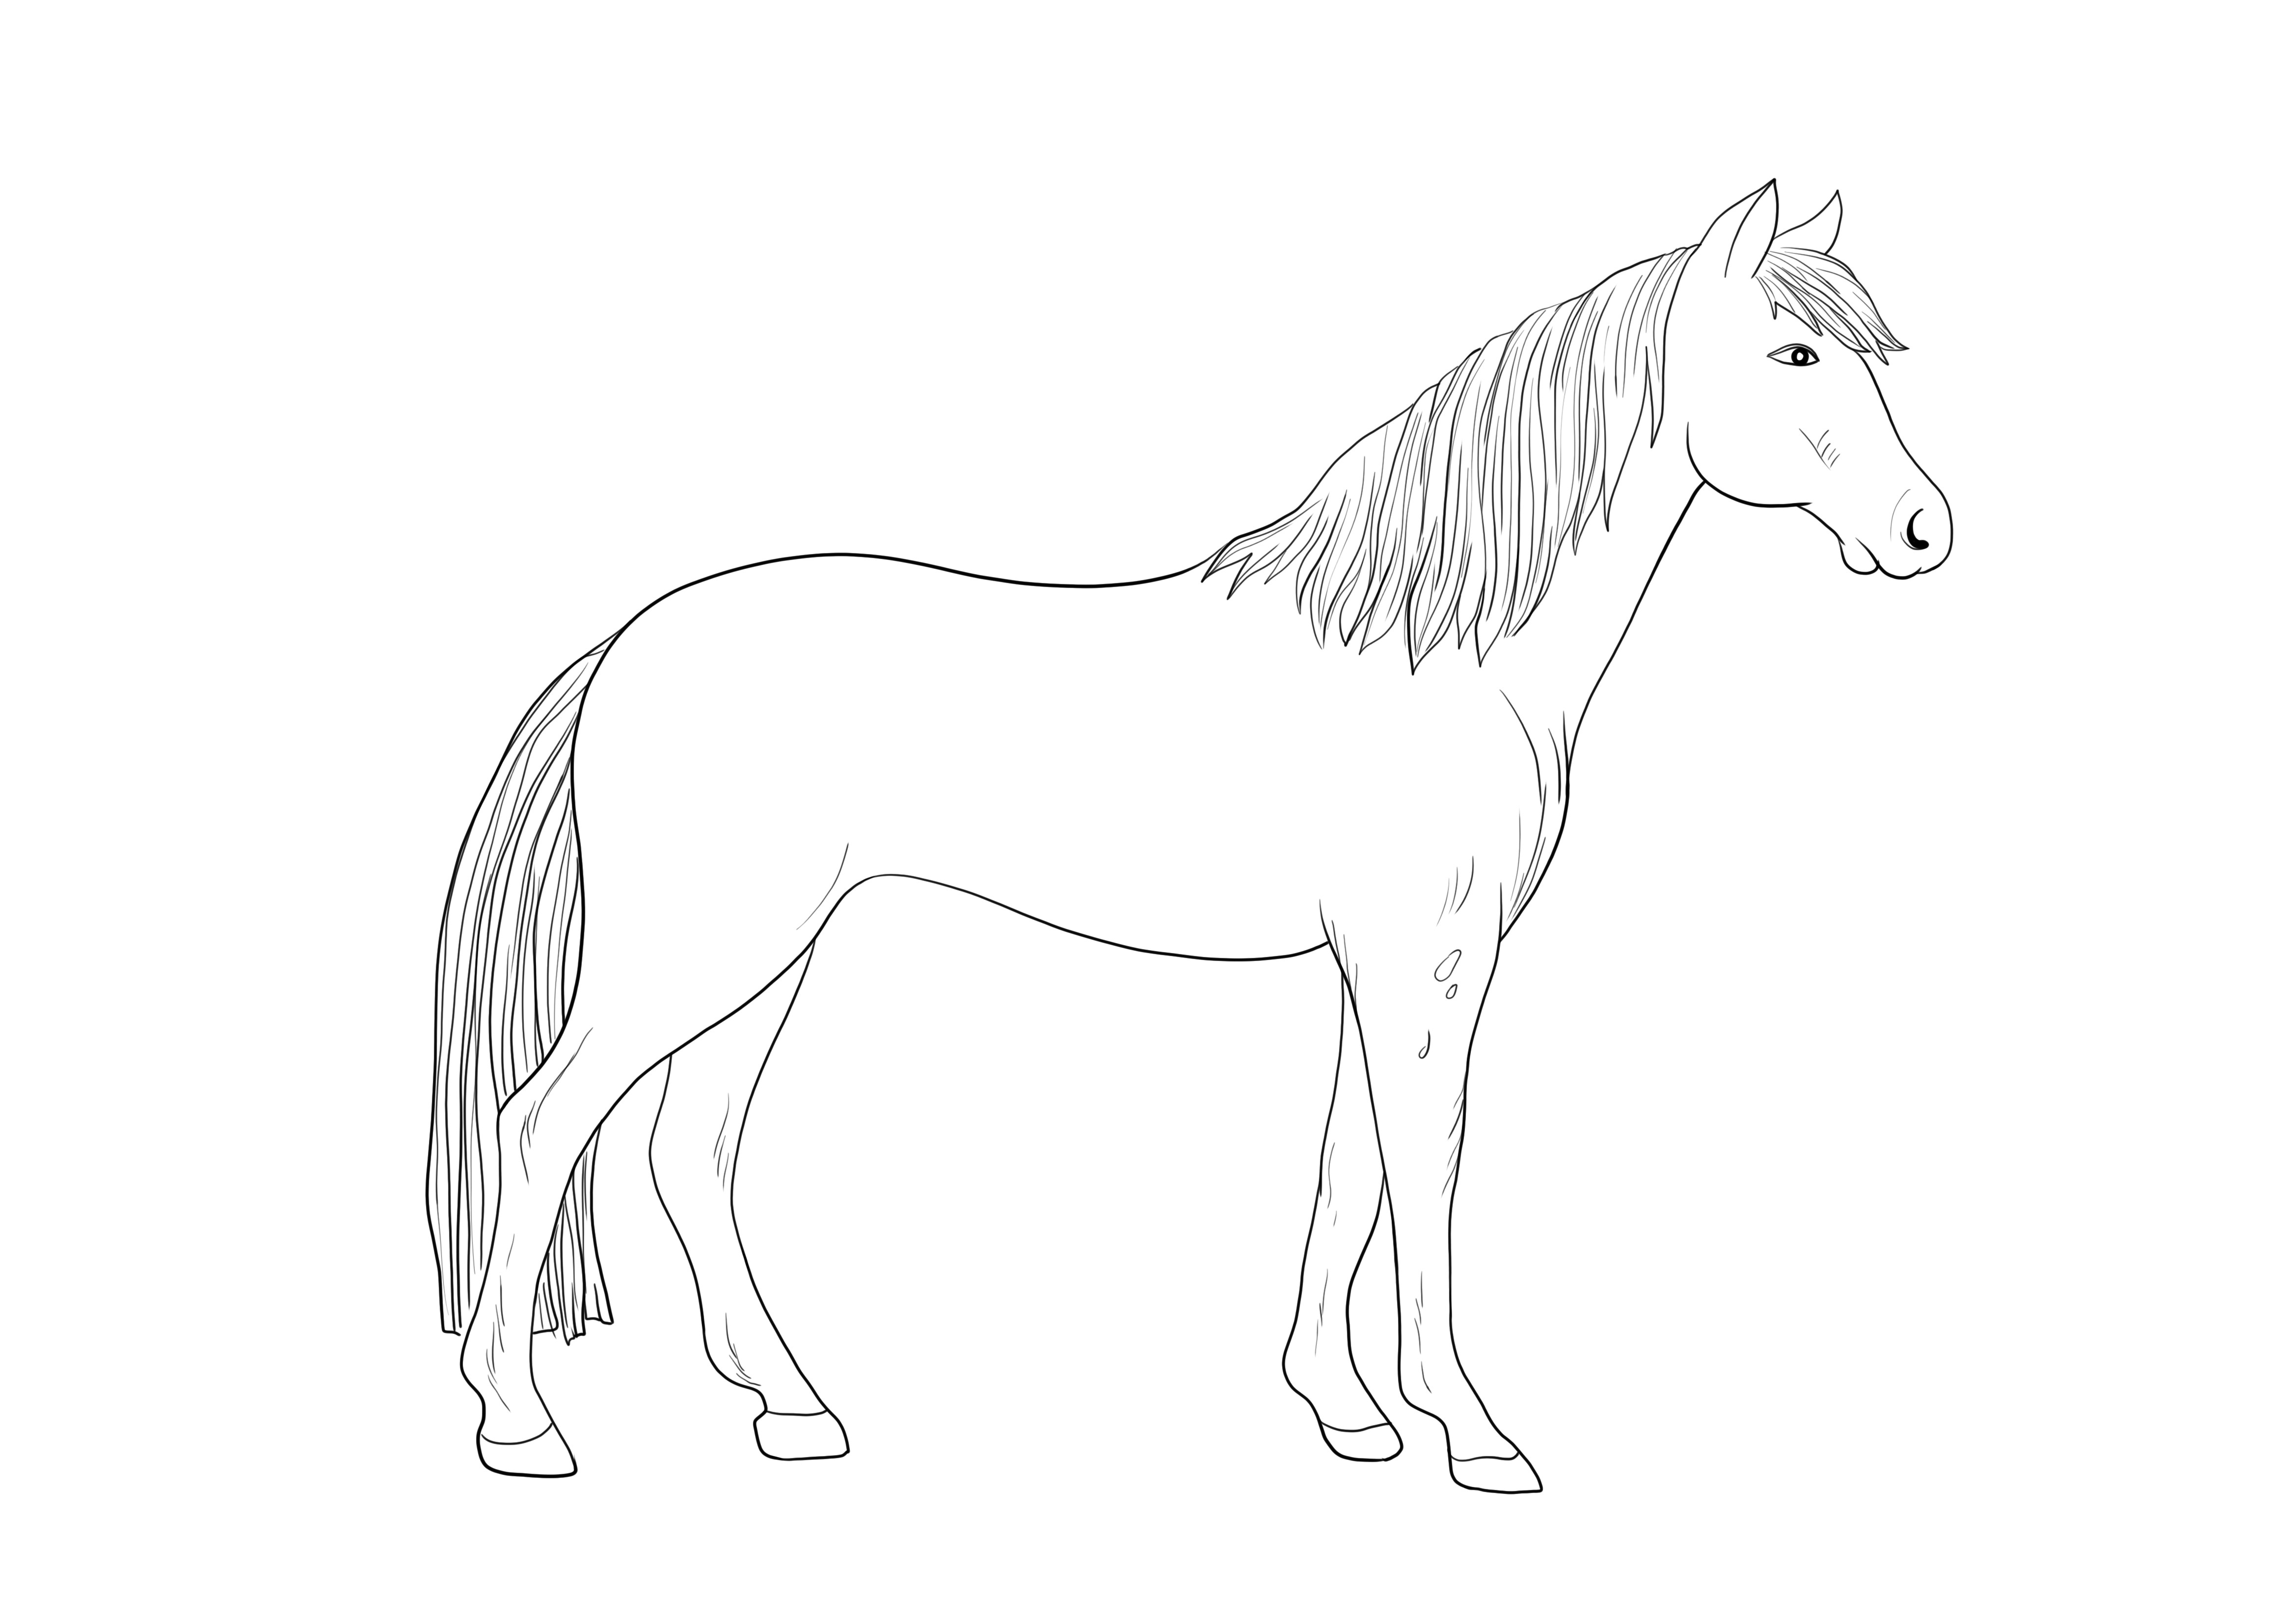 Kaunis Appaloosa Horse valmis tulostamaan ilmaisen kuvan